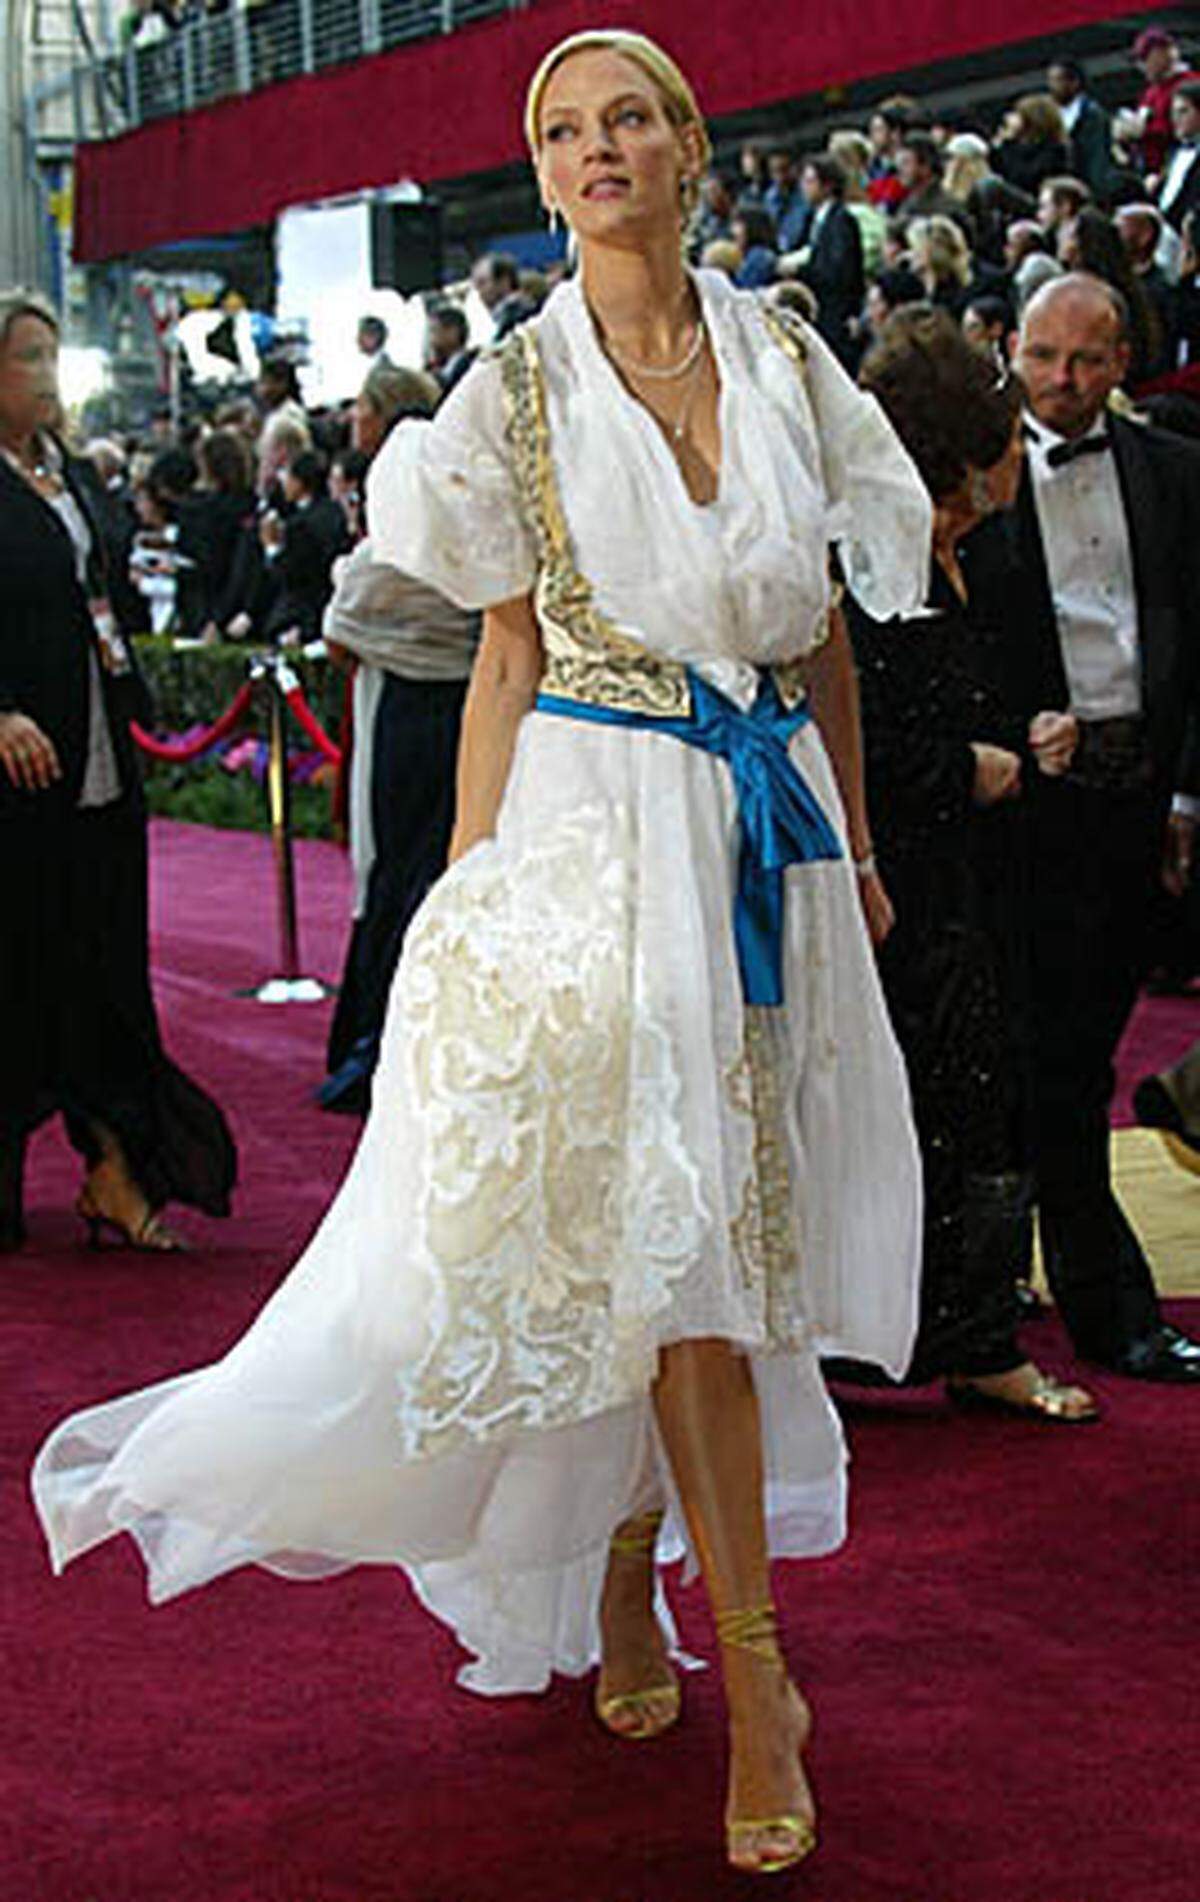 Auch Uma Thurman ist eine Wiederholungstäterin, denn was soll das sein? Ein Bademantel? Ein Kimono?